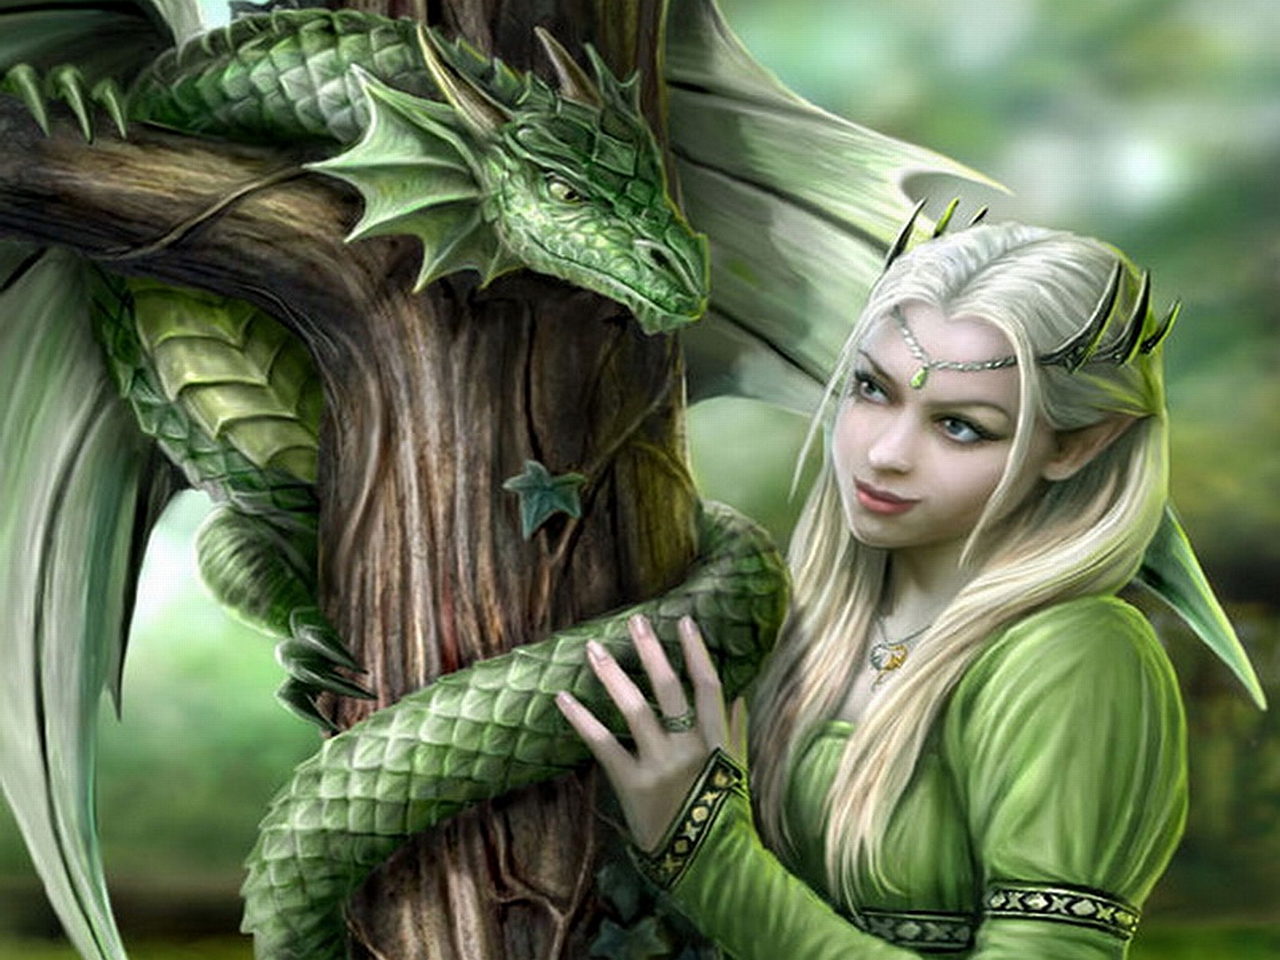 papier peint elfe,oeuvre de cg,personnage fictif,dragon,mythologie,illustration